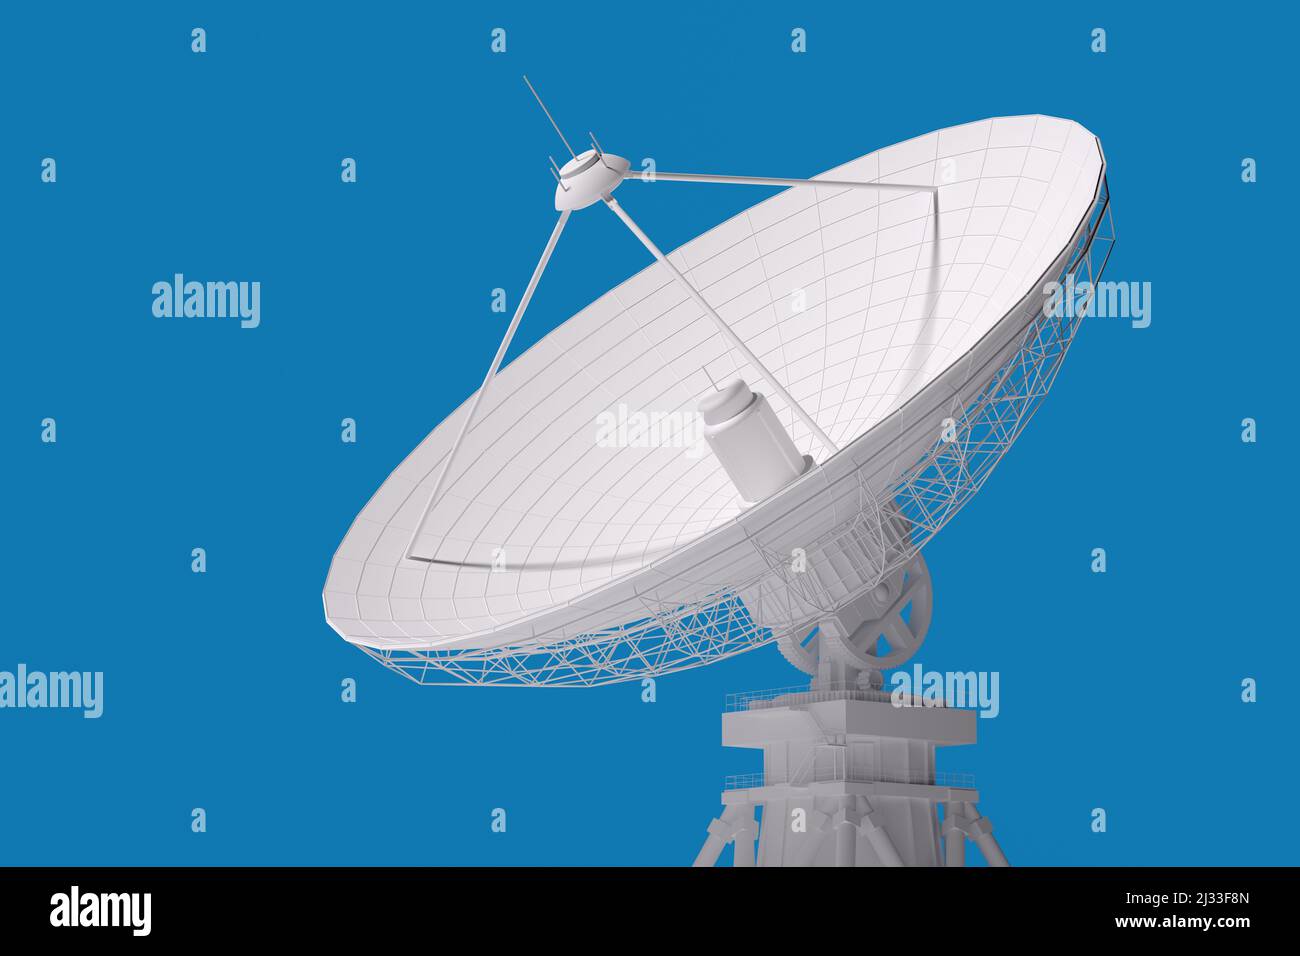 Modelo 3d de una antena parabólica para transmitir y recibir información  aislada en un fondo azul.